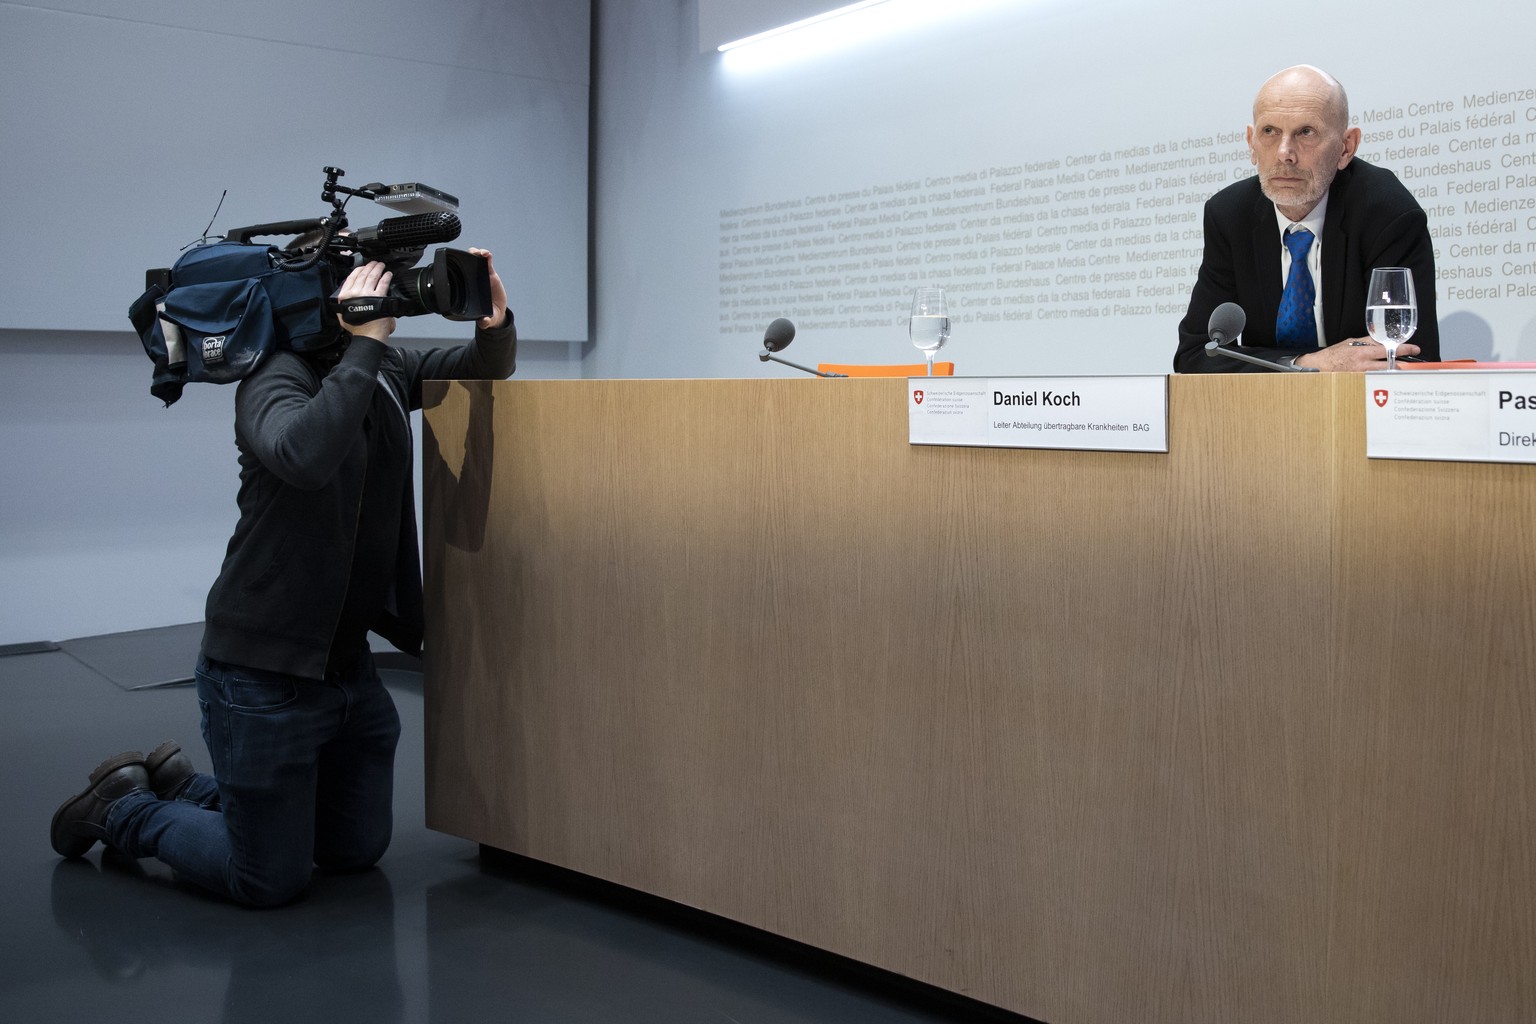 Daniel Koch, Leiter Abteilung uebertragbare Krankheiten BAG, spricht waehrend einer Medienkonferenz ueber die Situation des Coronavirus, am Montag, 24. Februar 2020 in Bern. (KEYSTONE/Peter Klaunzer)